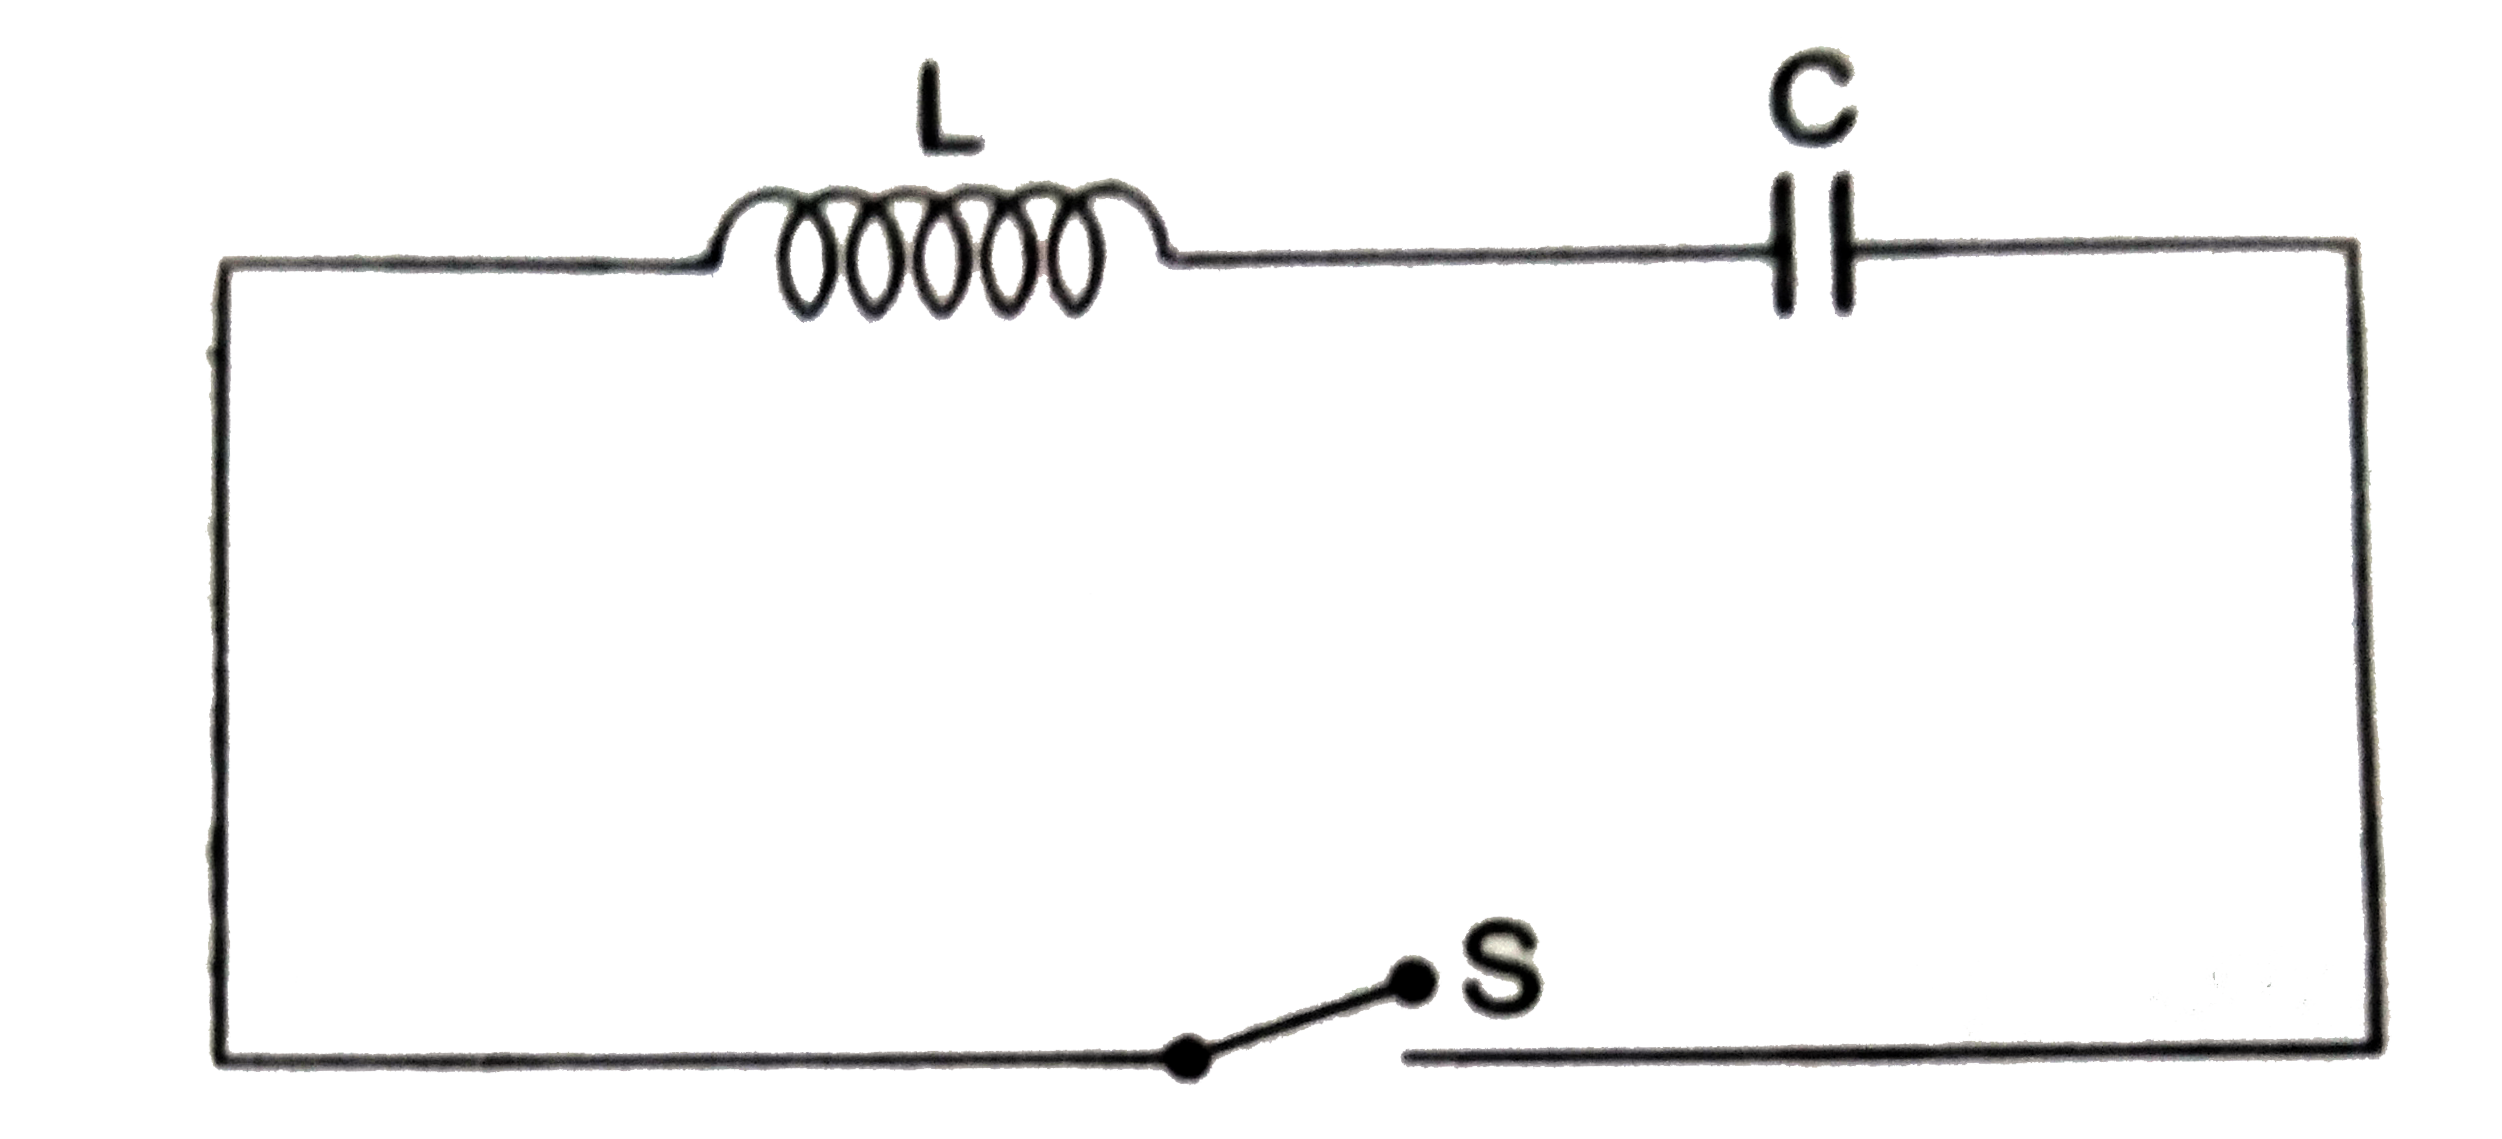 किसी आवेशित संधारित्र को एक प्रेरित्र के साथ जोड़कर अनावेशन क्रिया (discharging process) के क्रम में विद्युतीय दोलन होता हैं । इस प्रक्रम में संधारित्र की विद्युत - ऊर्जा एंव  प्रेरित्र की चुंबकीय ऊर्जा के बीच परस्पर विनिमय (exchange) होता हैं । दोलन का एक चक्र पूरा होने में लगा समय , अर्थात आवर्तकाल T का मान L तथा C पर निर्भर करता हैं जिसके लिए संबंध  T = 2 pi sqrt(LC) मान्य होता हैं । चित्र में आवेशित संधारित्र के लिए विभवातंर V(0) है  तथा  स्विच S को समय t = 0 पर बंद किया जाता हैं  |      प्रेरित्र (inductor)  में संचित चुंबकीय ऊर्जा का महत्तम मान हैं